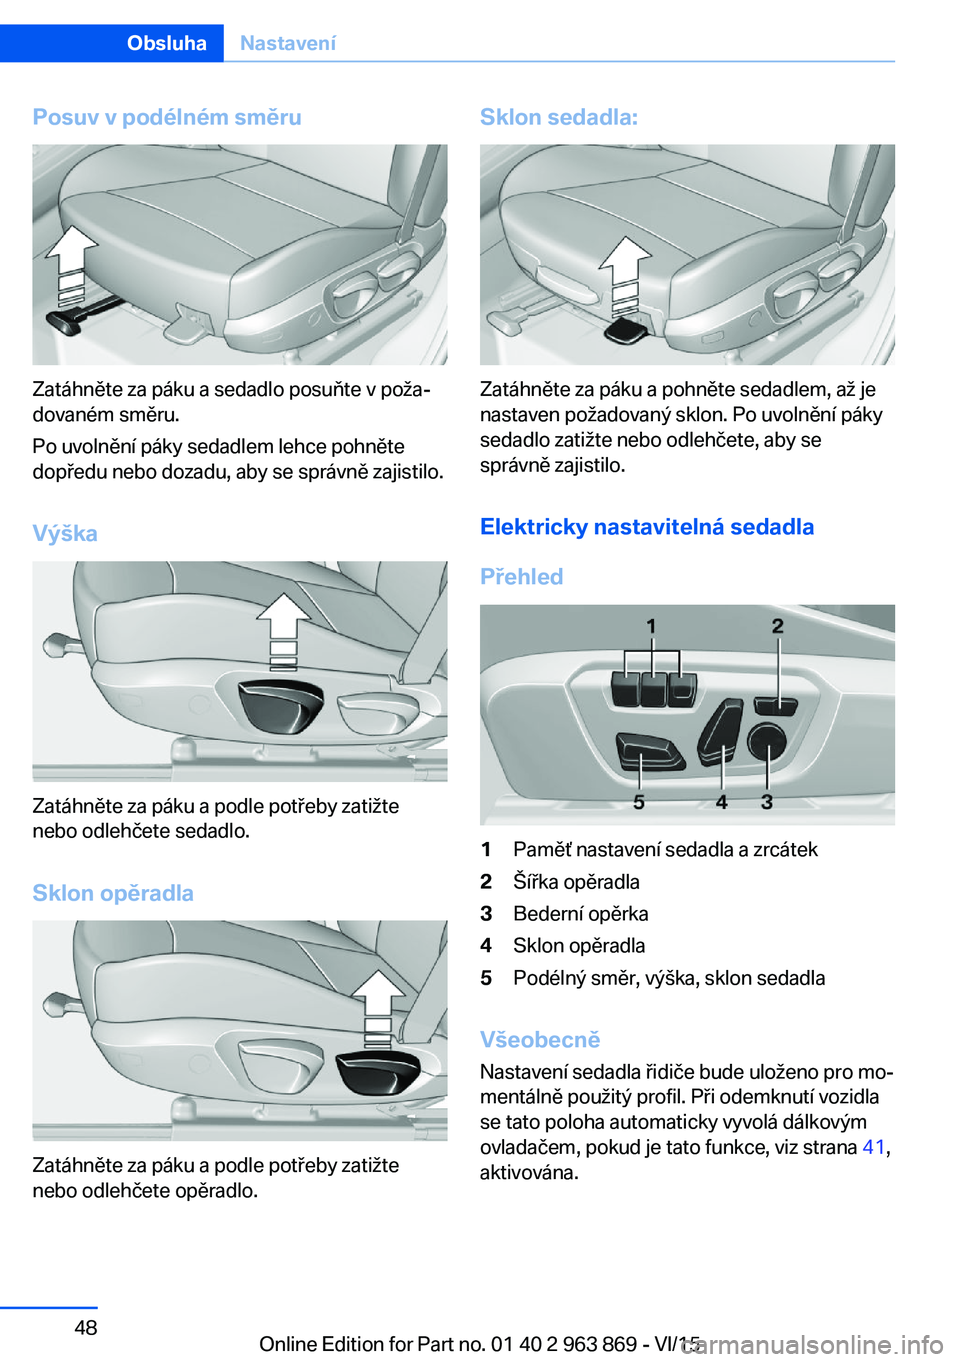 BMW 2 SERIES COUPE 2016  Návod na použití (in Czech) Posuv v podélném směru
Zatáhněte za páku a sedadlo posuňte v poža‐
dovaném směru.
Po uvolnění páky sedadlem lehce pohněte
dopředu nebo dozadu, aby se správně zajistilo.
Výška
Zat�